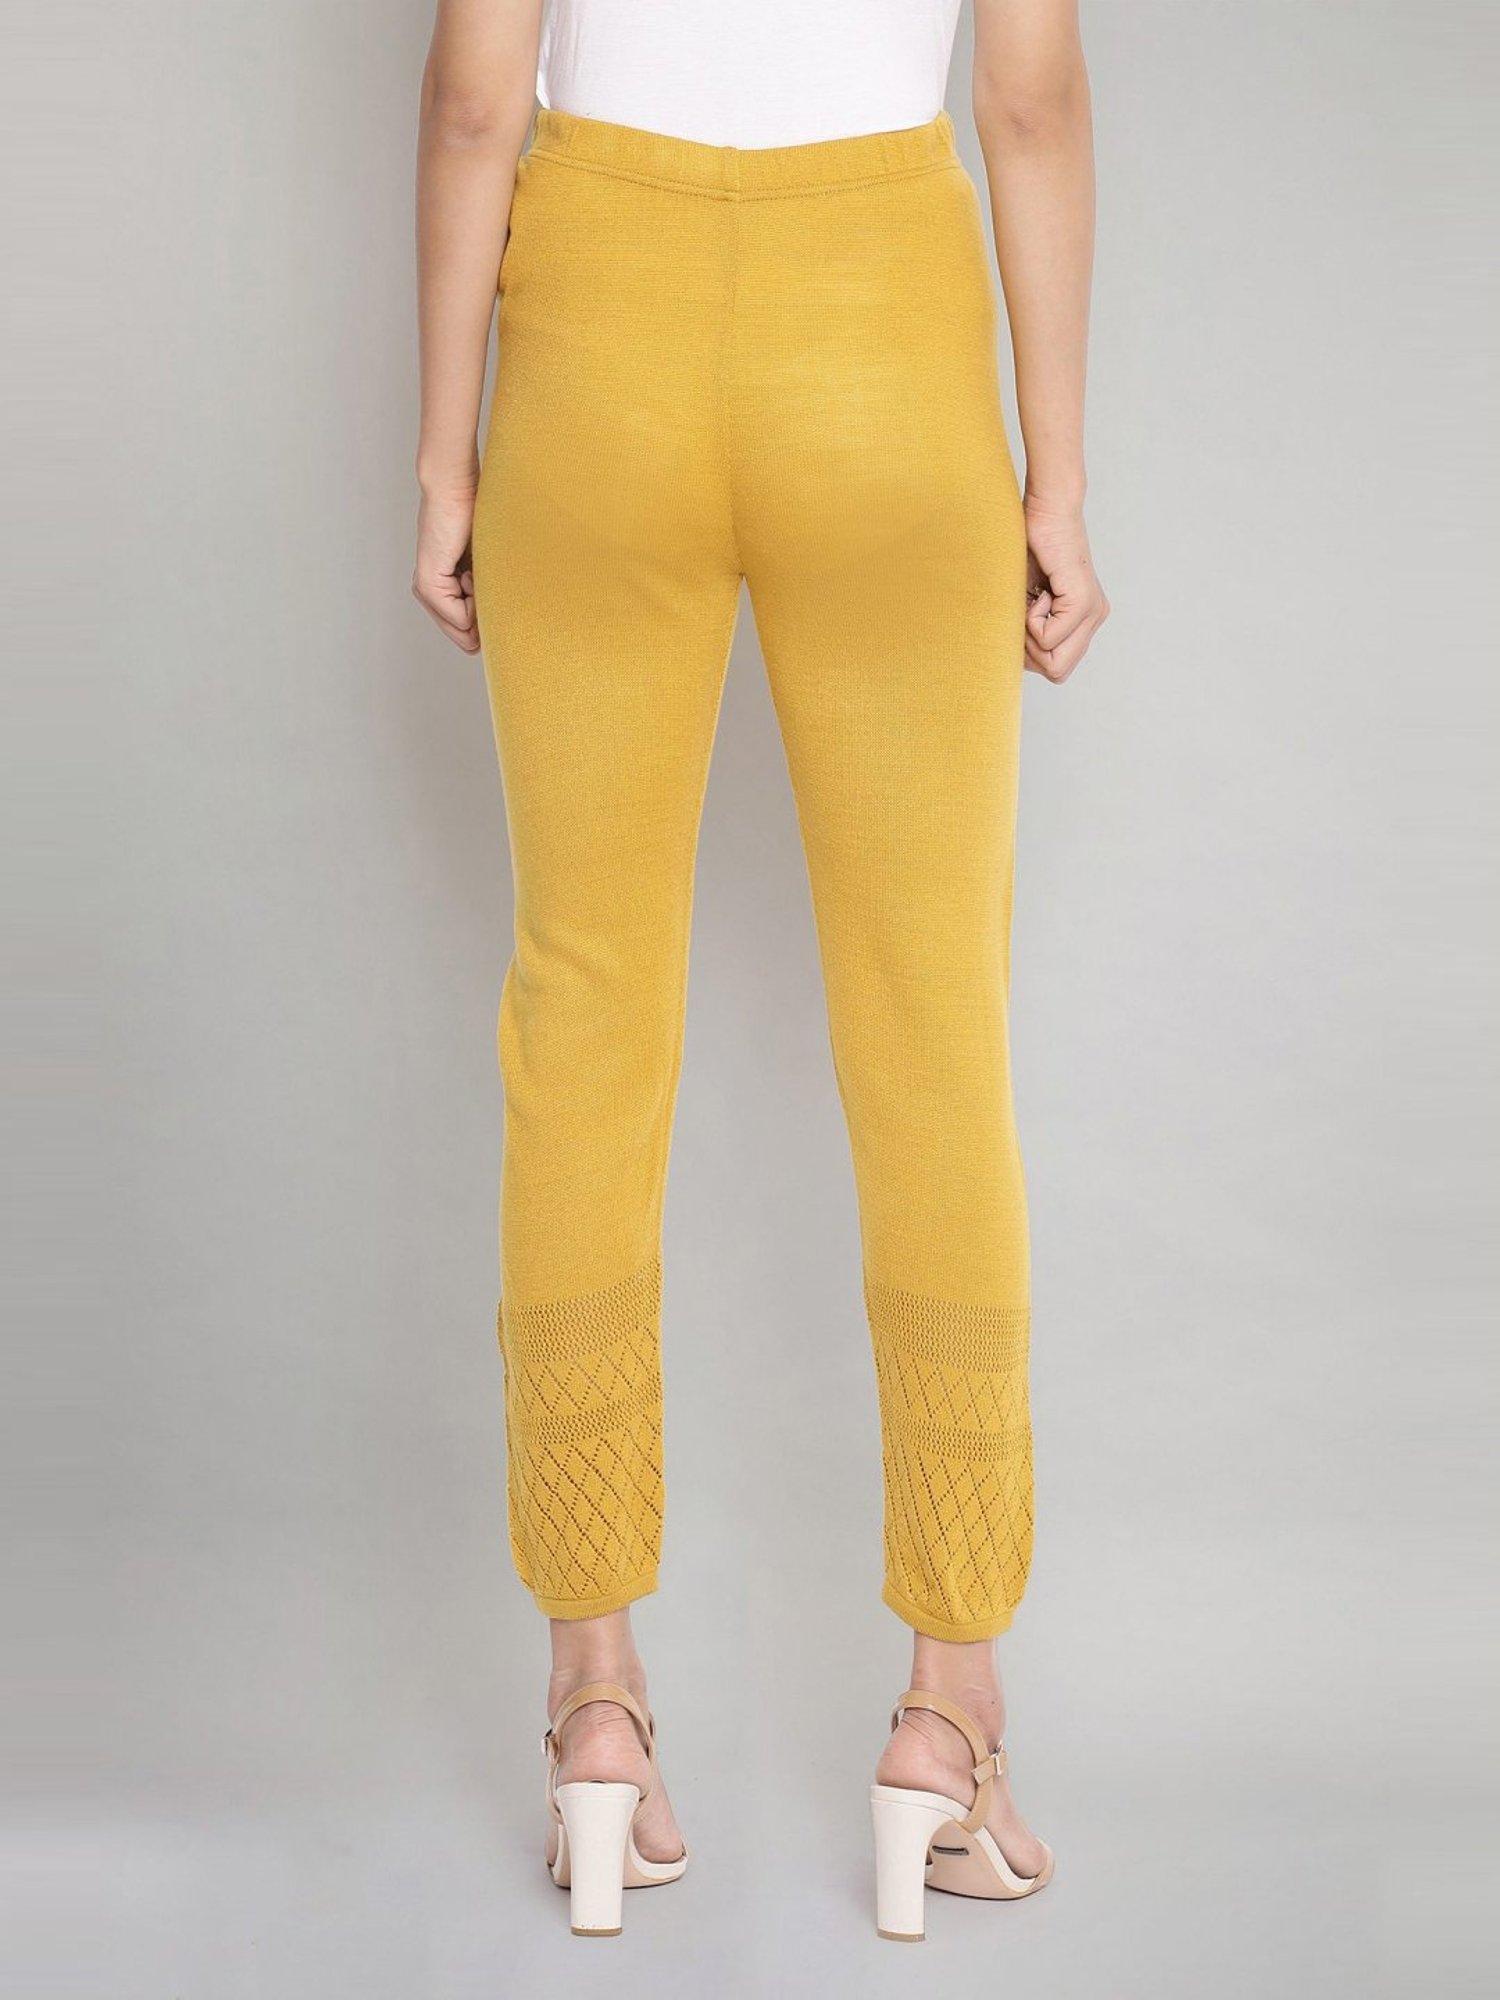 Buy Aurelia Yellow Regular Fit Leggings for Women Online @ Tata CLiQ